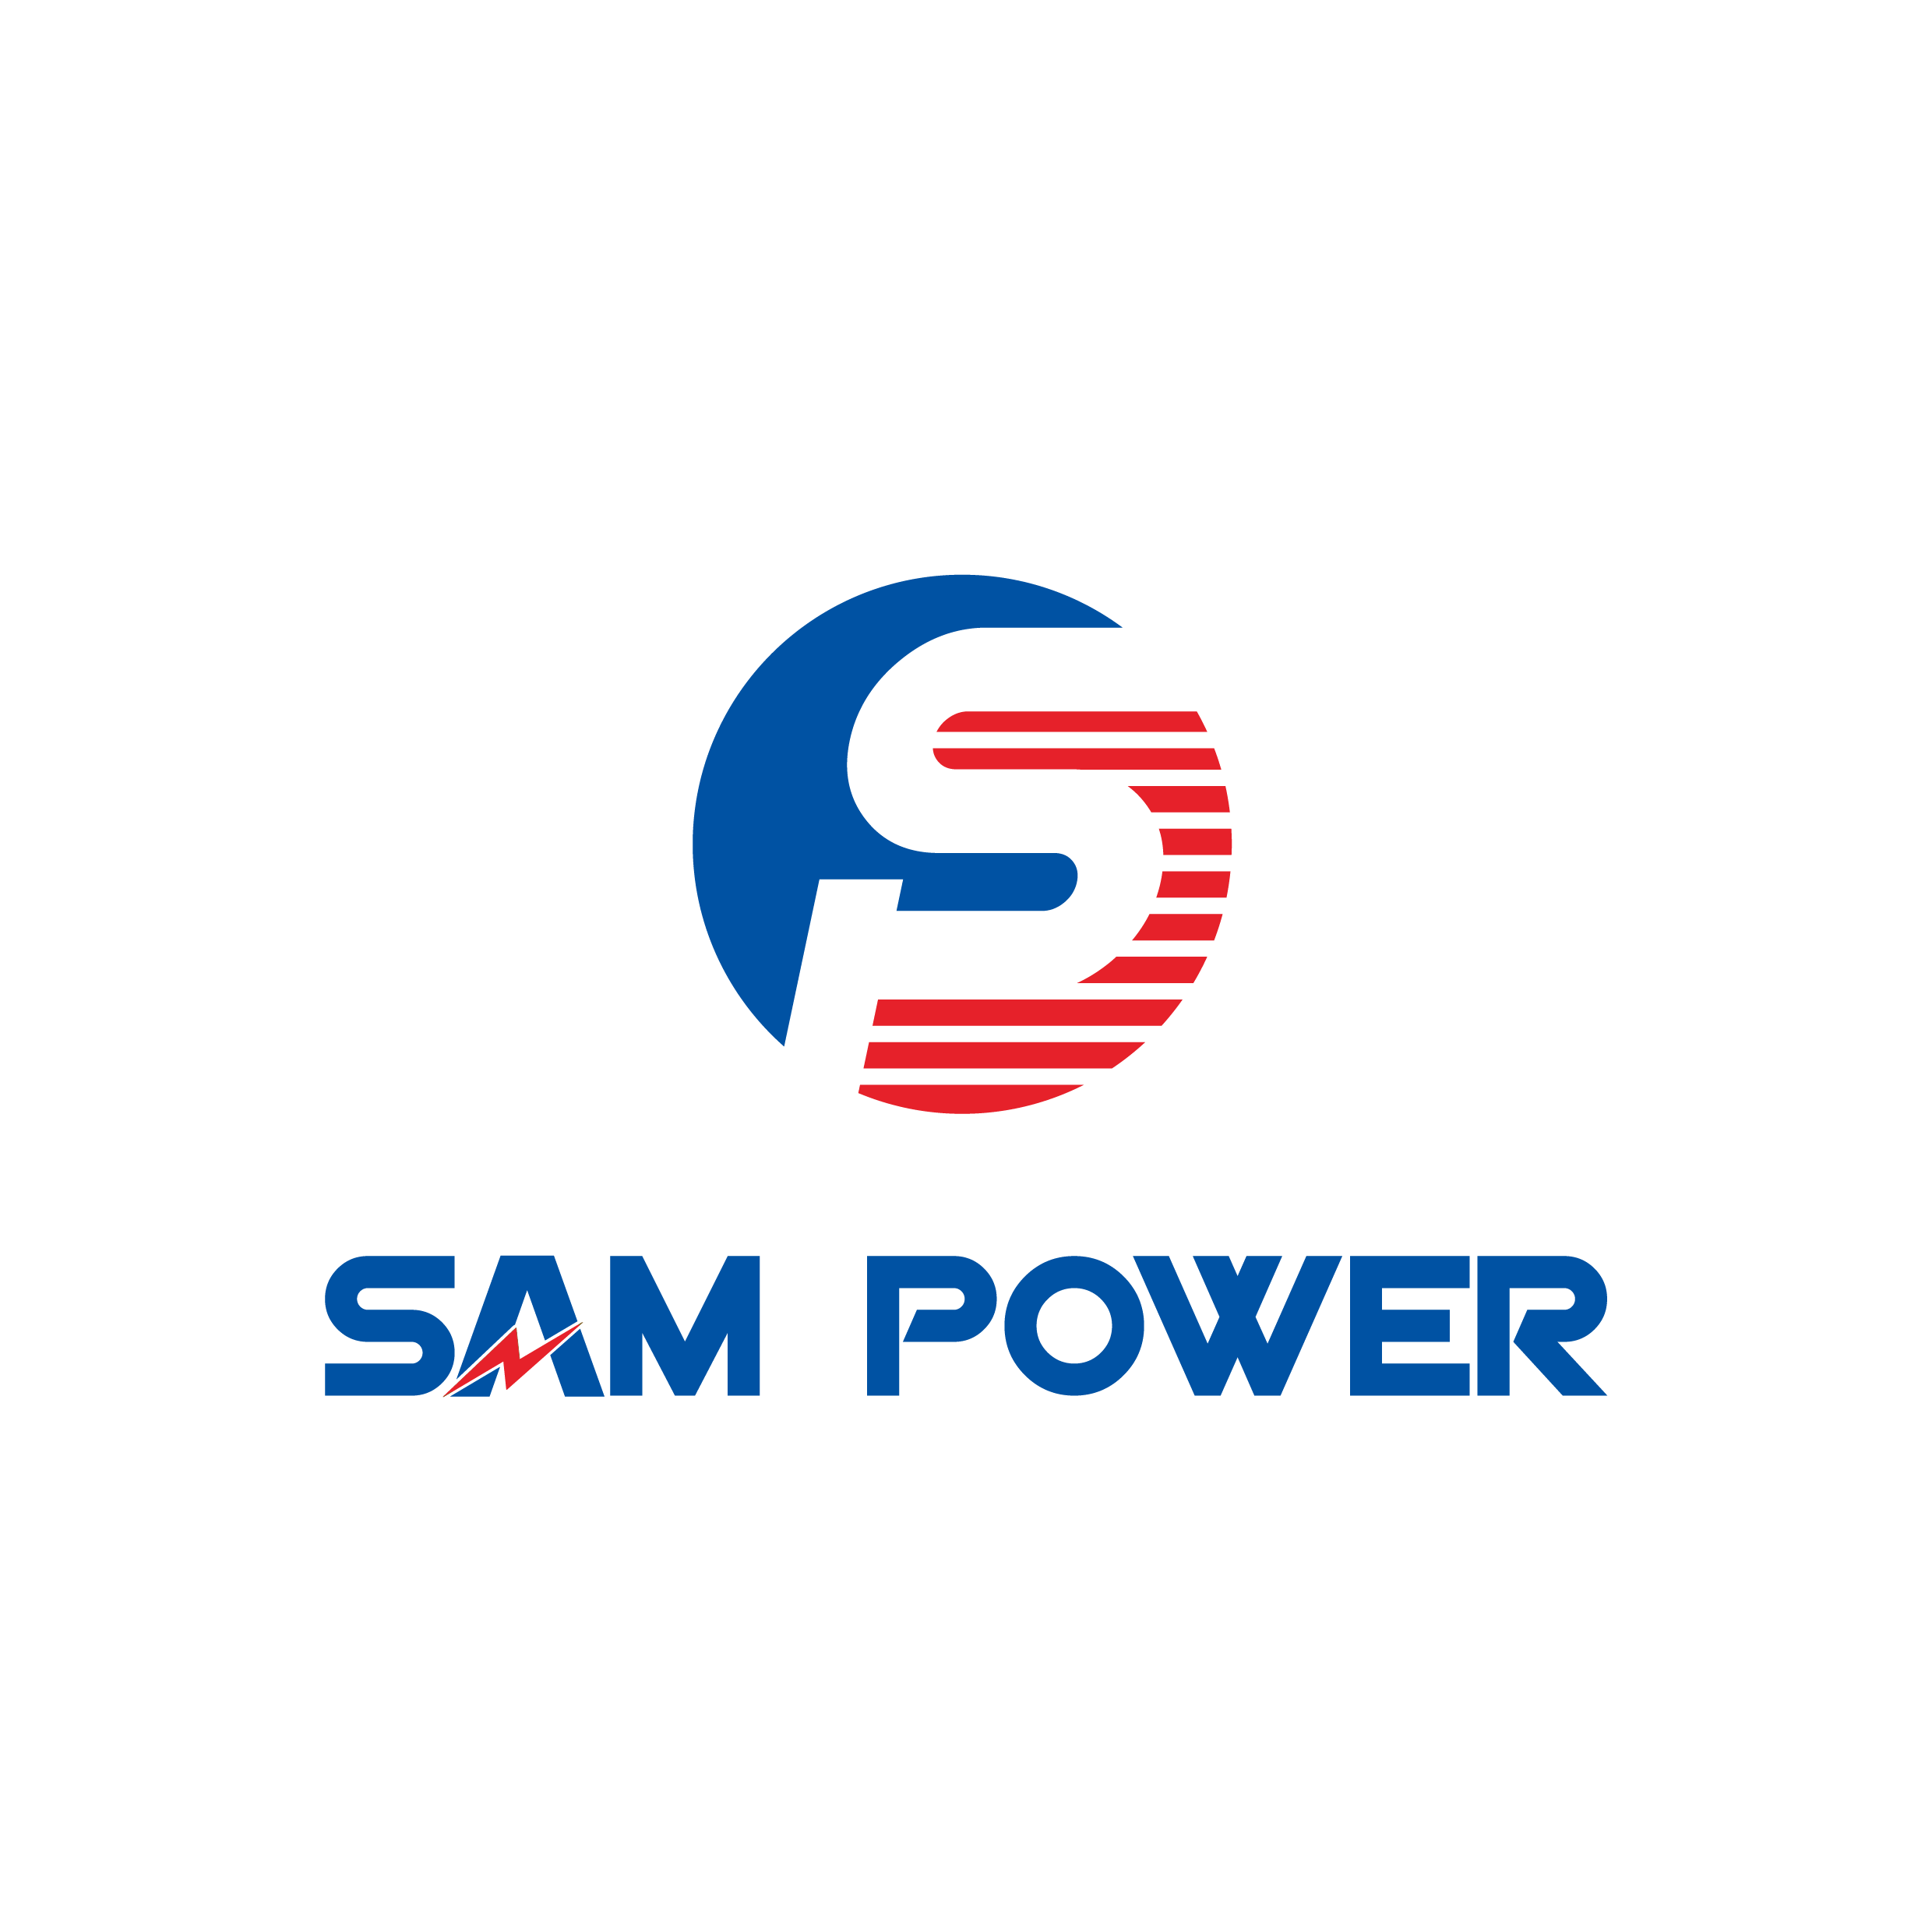 SAM POWER